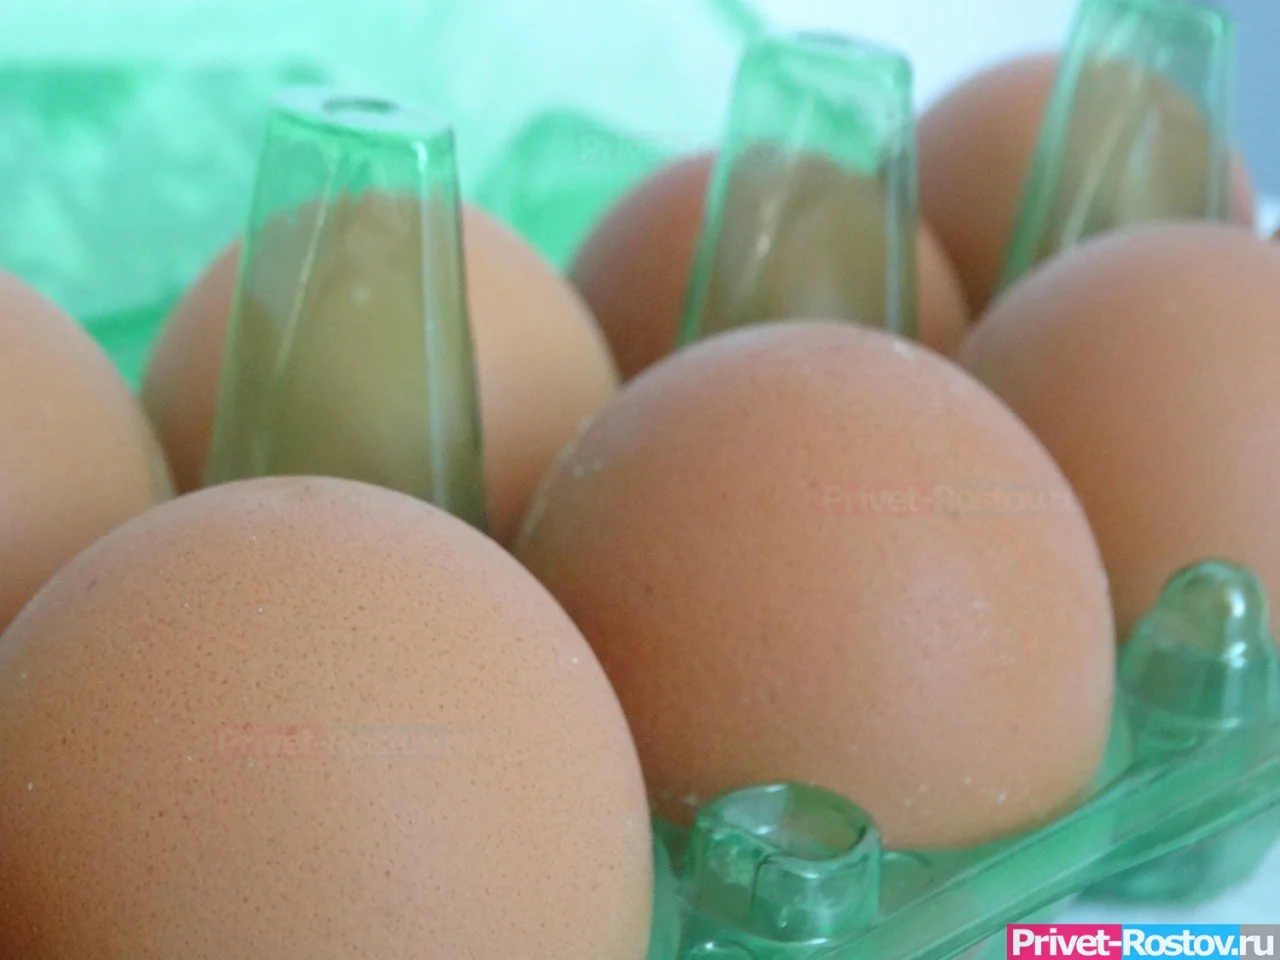 Куриные яйца и рыба в Ростове остаются самыми дорогими в регионе в сентябре